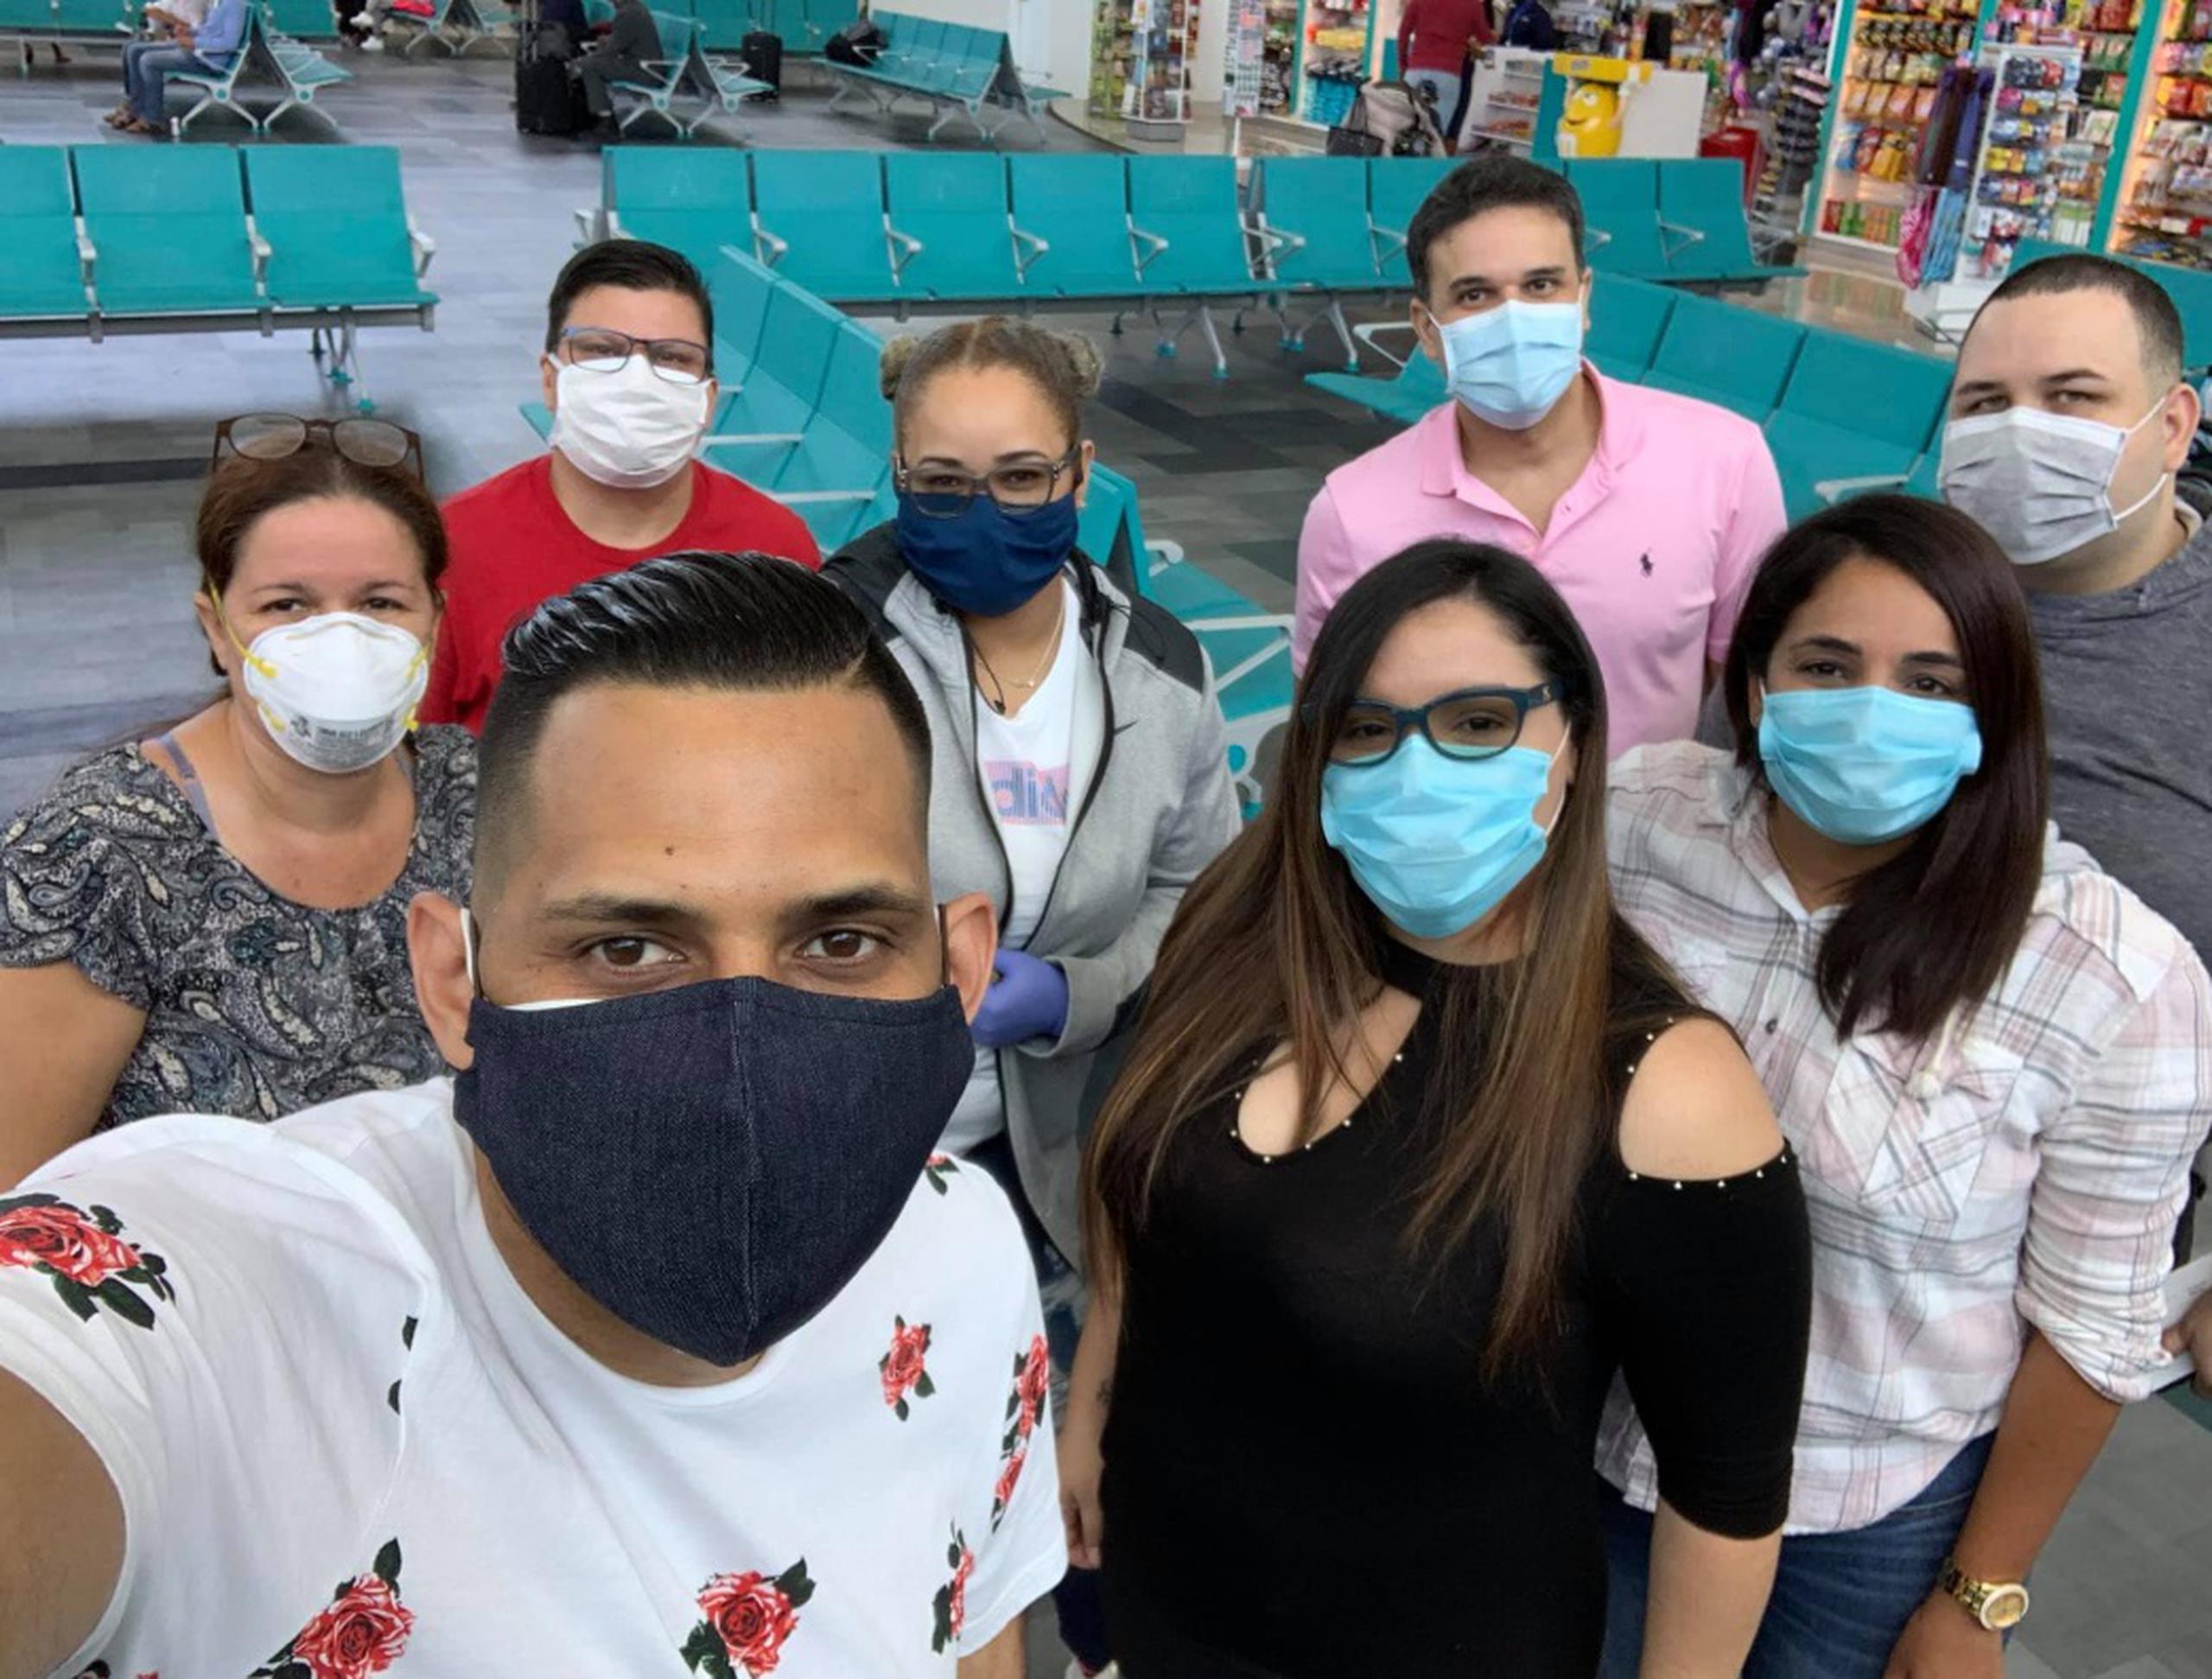 El pasado 10 de abril, José "Joy" Santiago partió a Nueva Jersey junto a otros enfermeros para cuidar a pacientes con coronavirus.